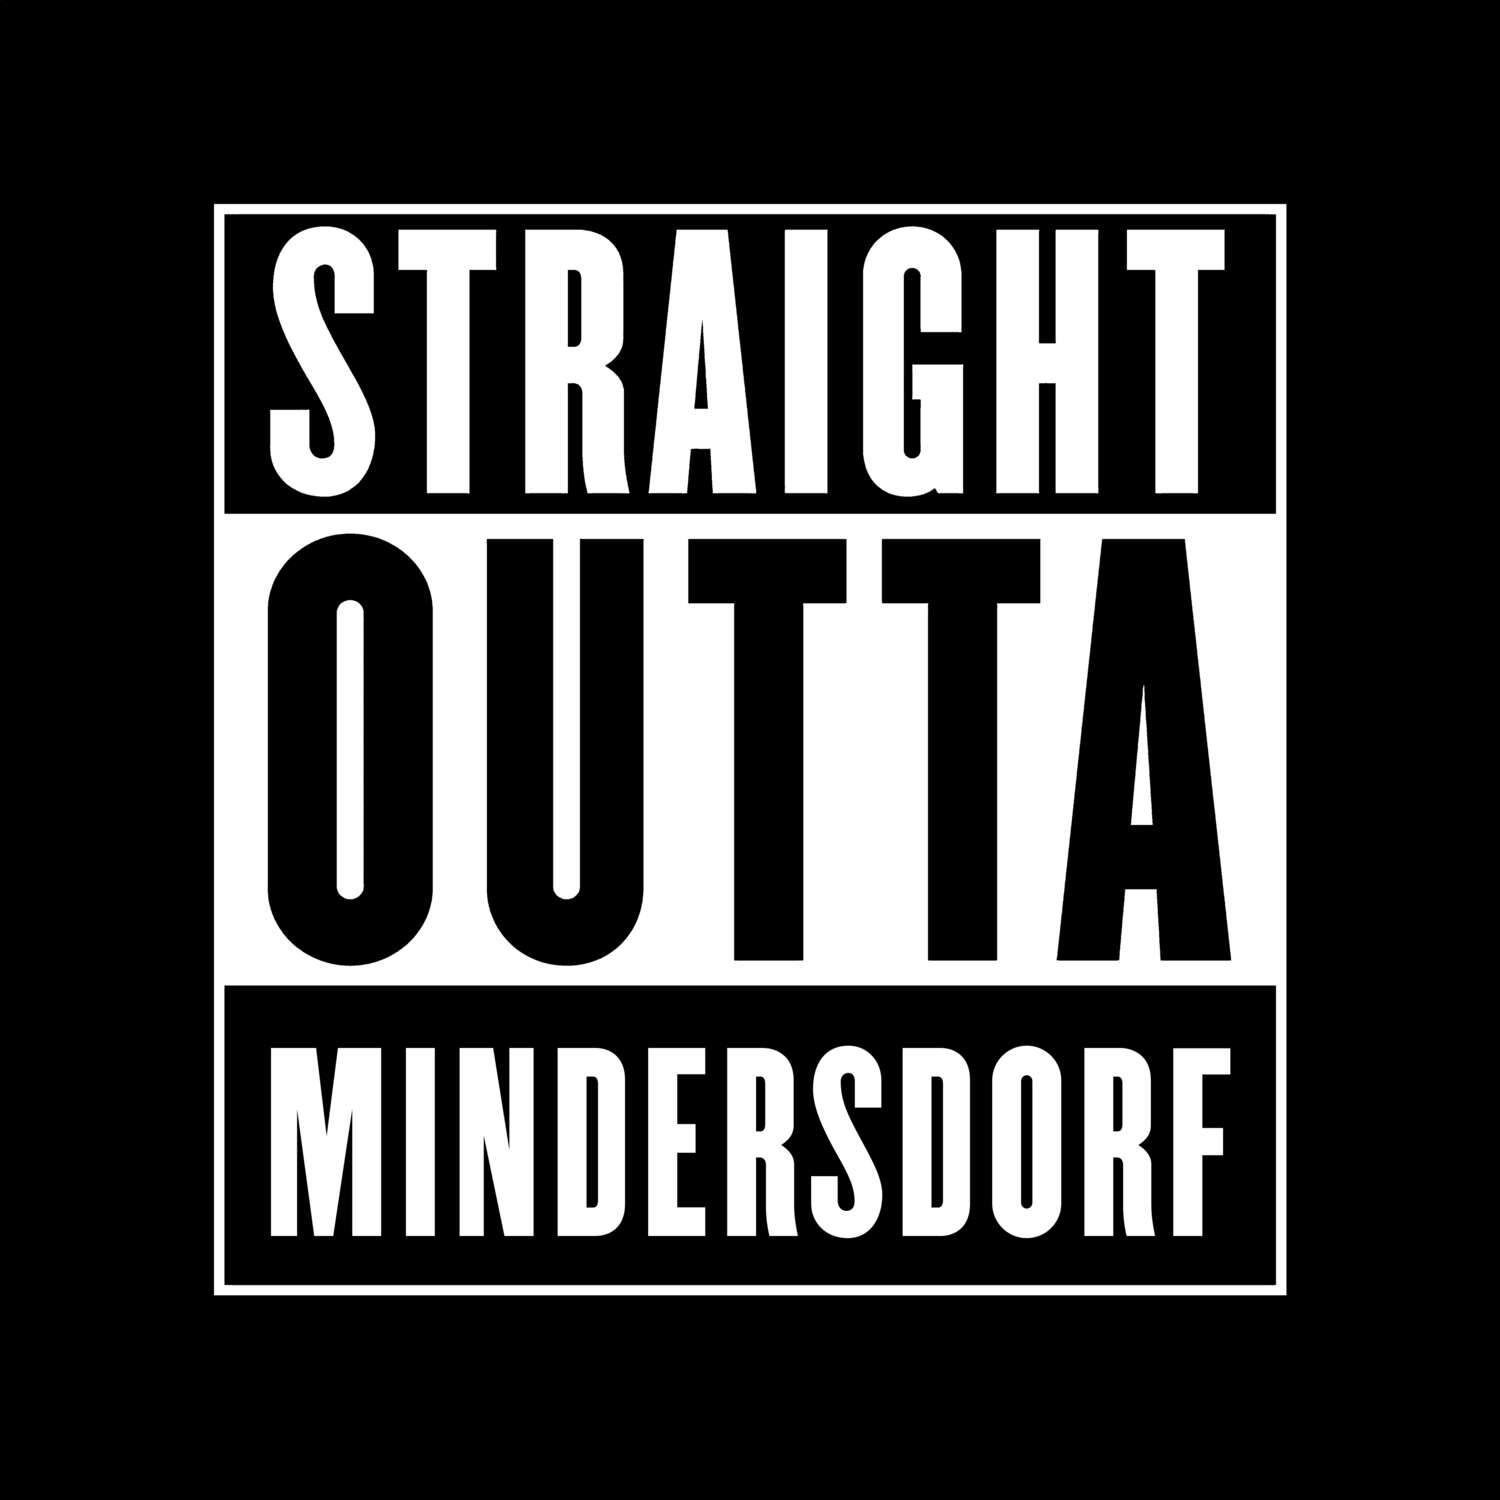 Mindersdorf T-Shirt »Straight Outta«